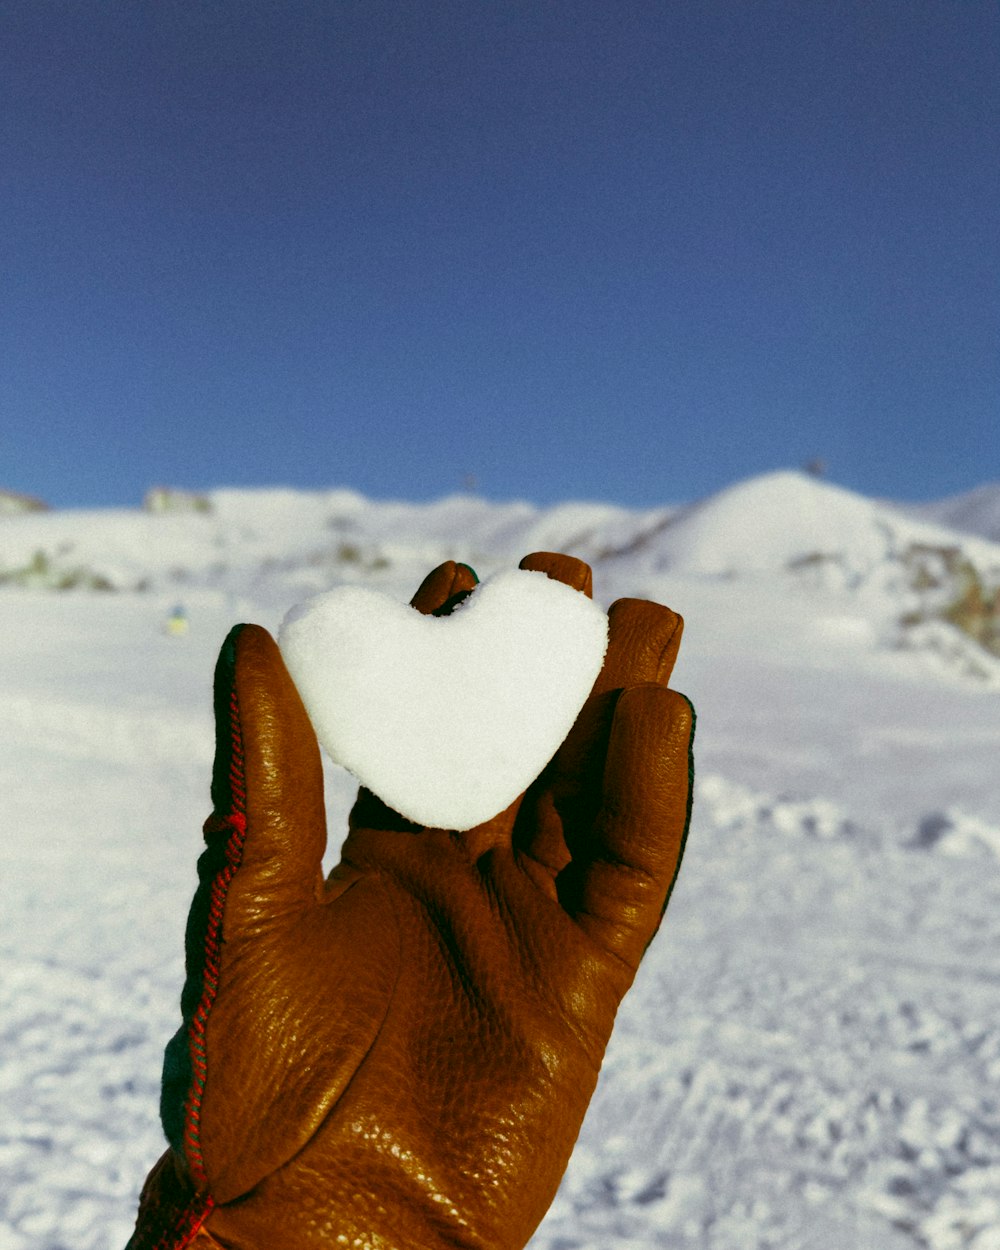 una mano enguantada sosteniendo un objeto en forma de corazón en la nieve